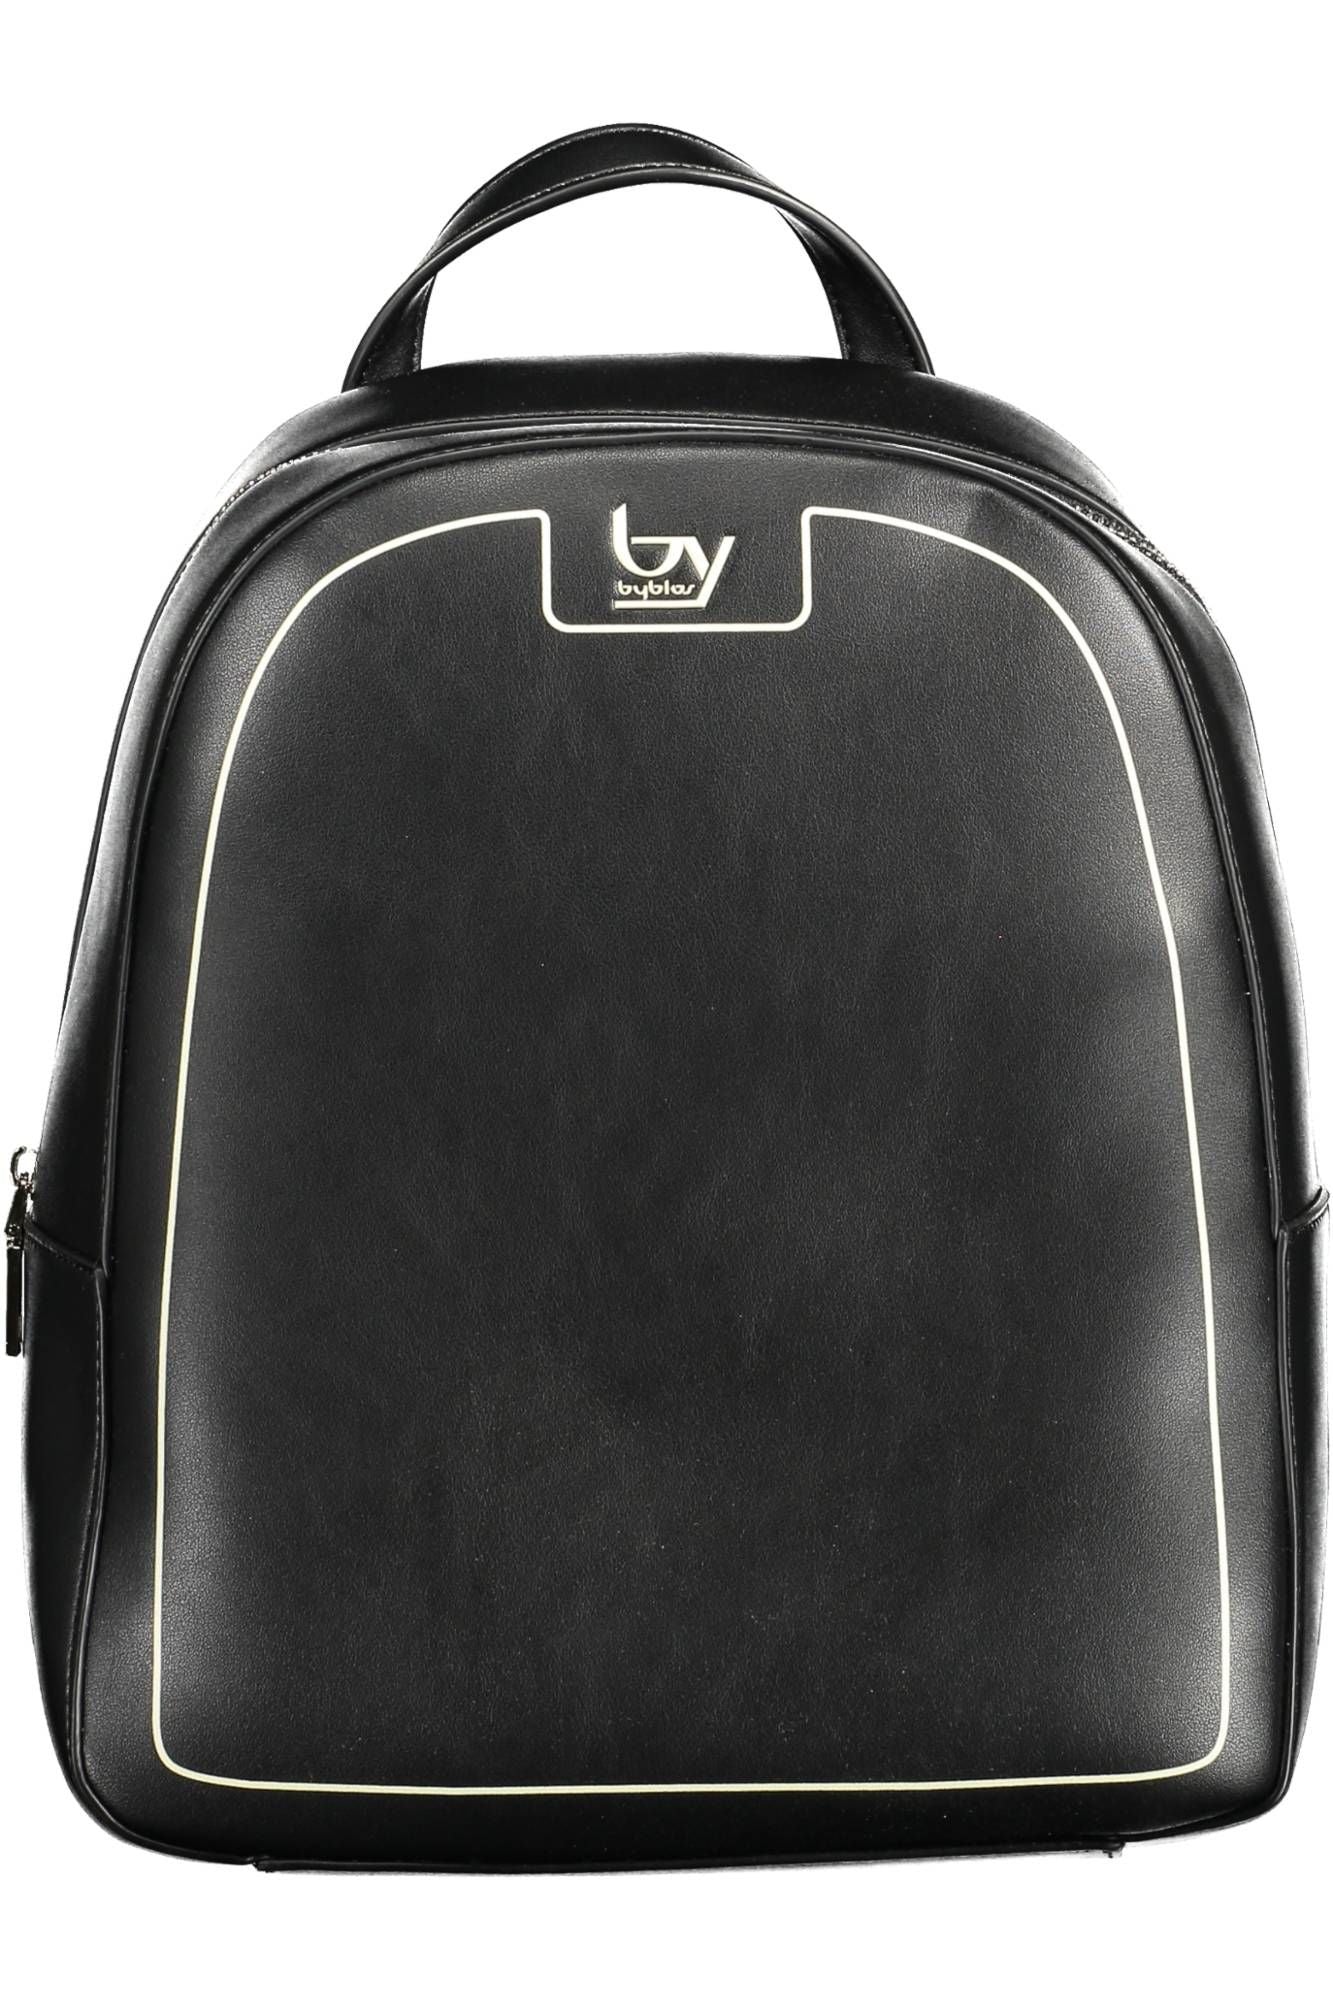 Elegant Black Backpack with Contrasting Details